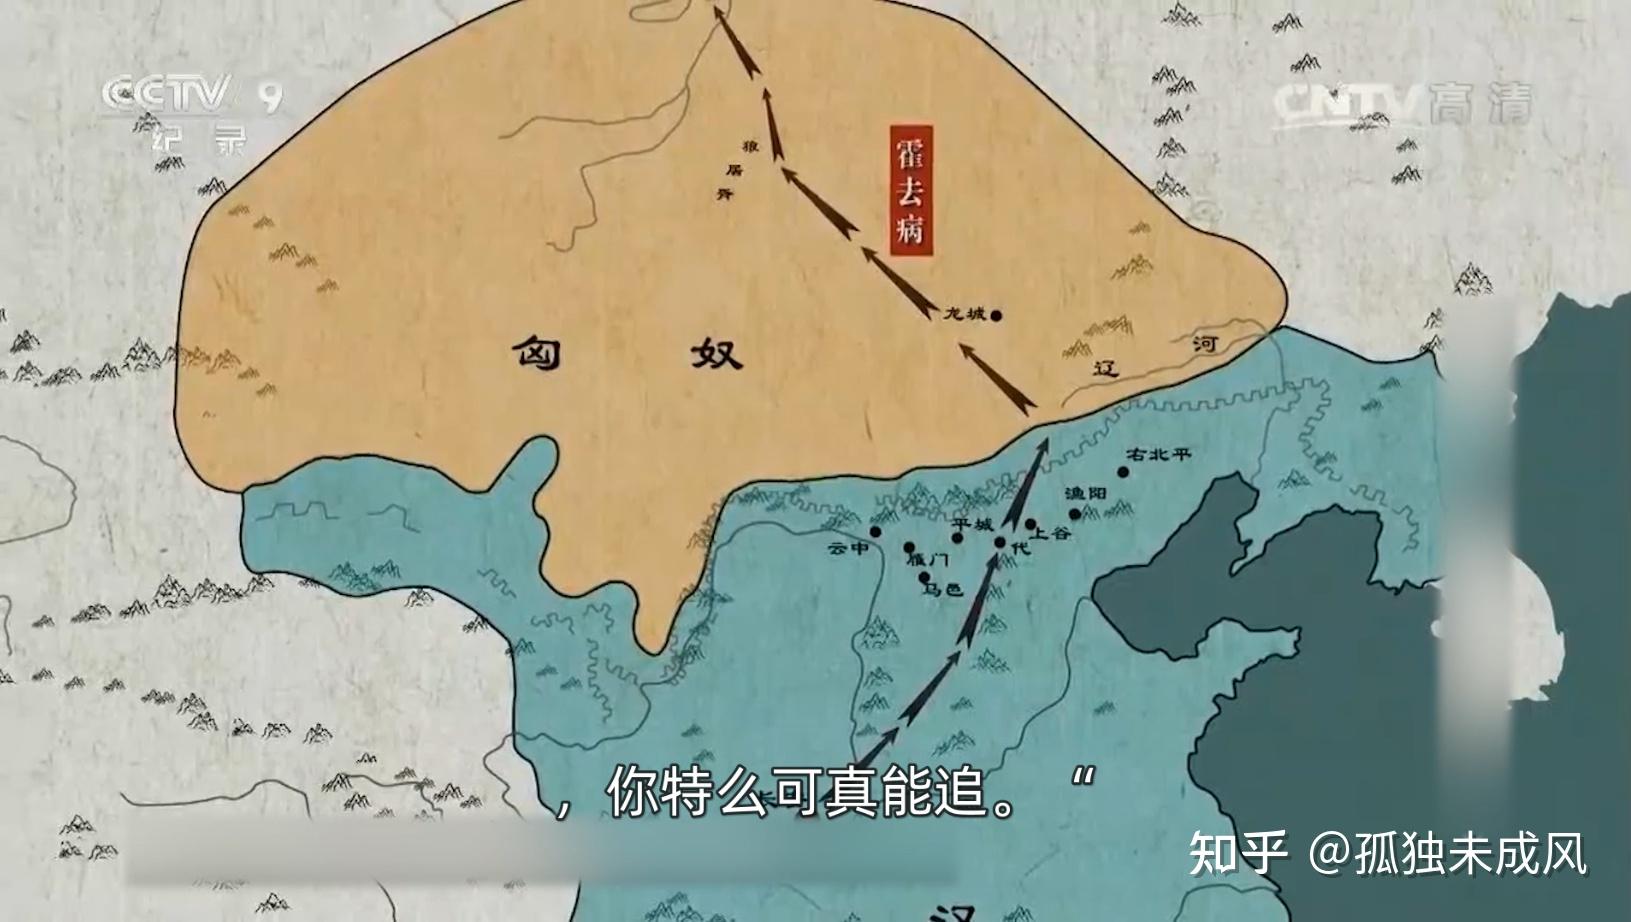 汉匈常年鏖战,主动权现在汉朝这边,是时候做个了断了,决定发动漠北